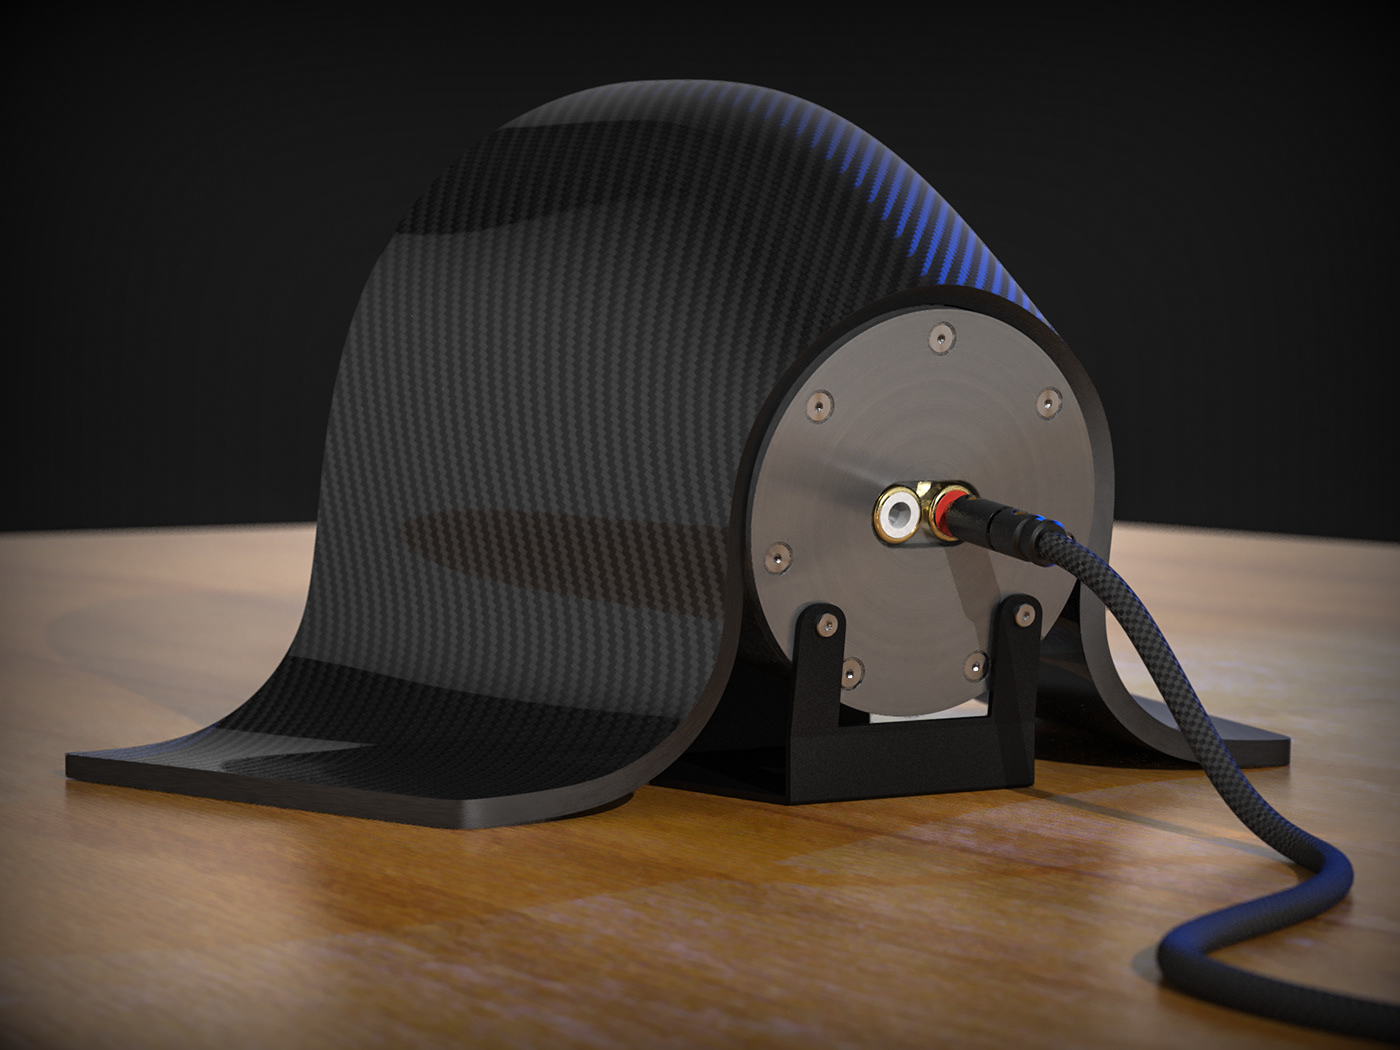 3dmodel Carbon Fiber CGI design diseño industrial design  keyshot product design  Render